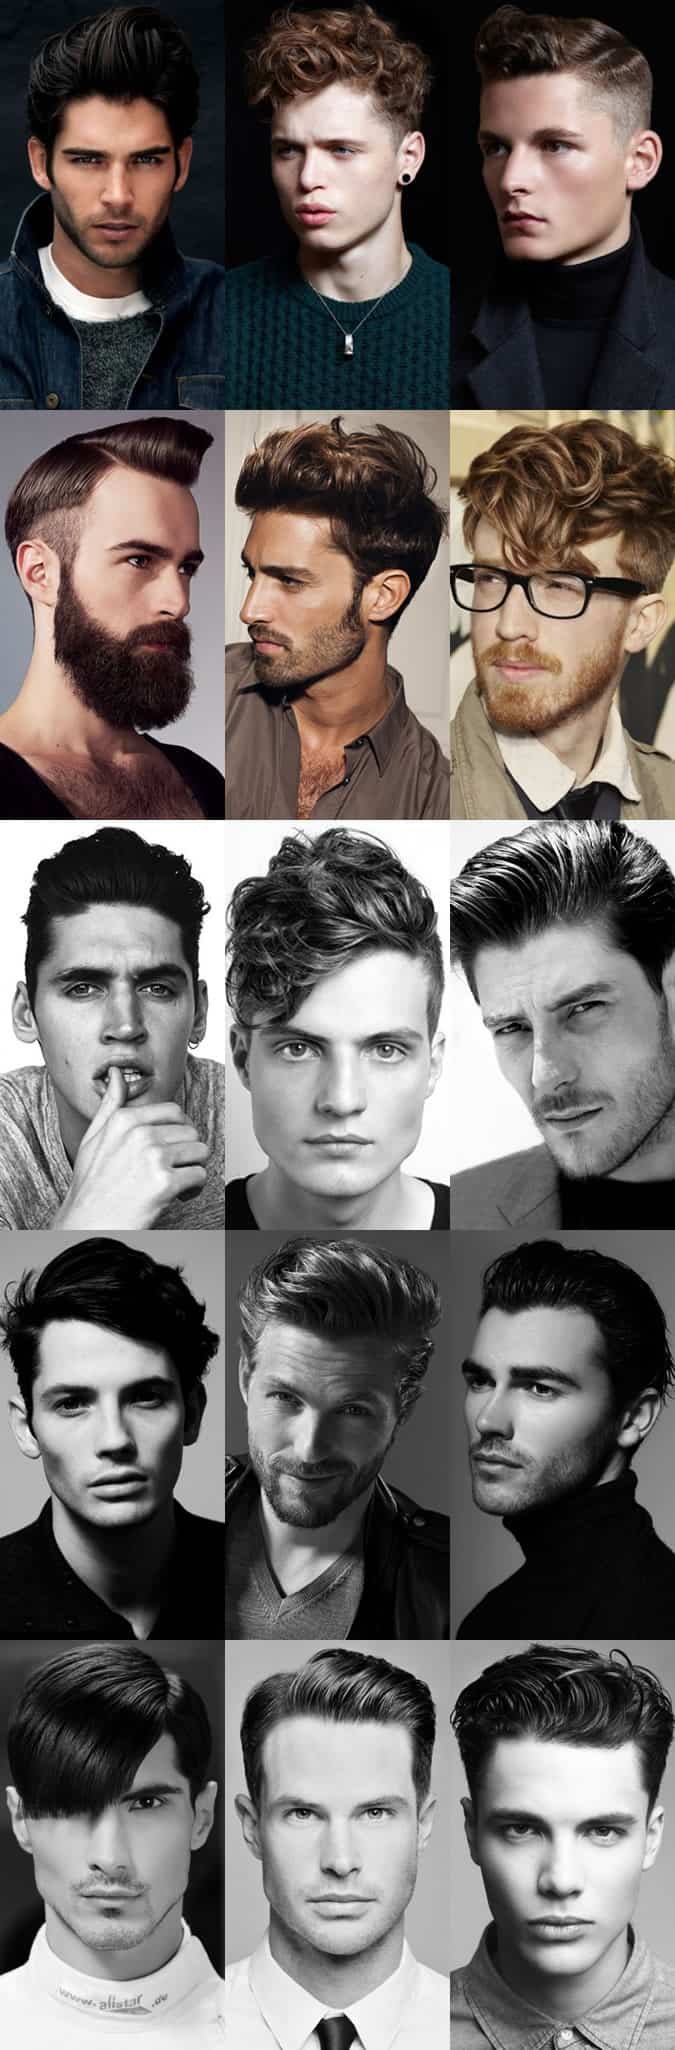 Men's Gel Hairstyles Lookbook